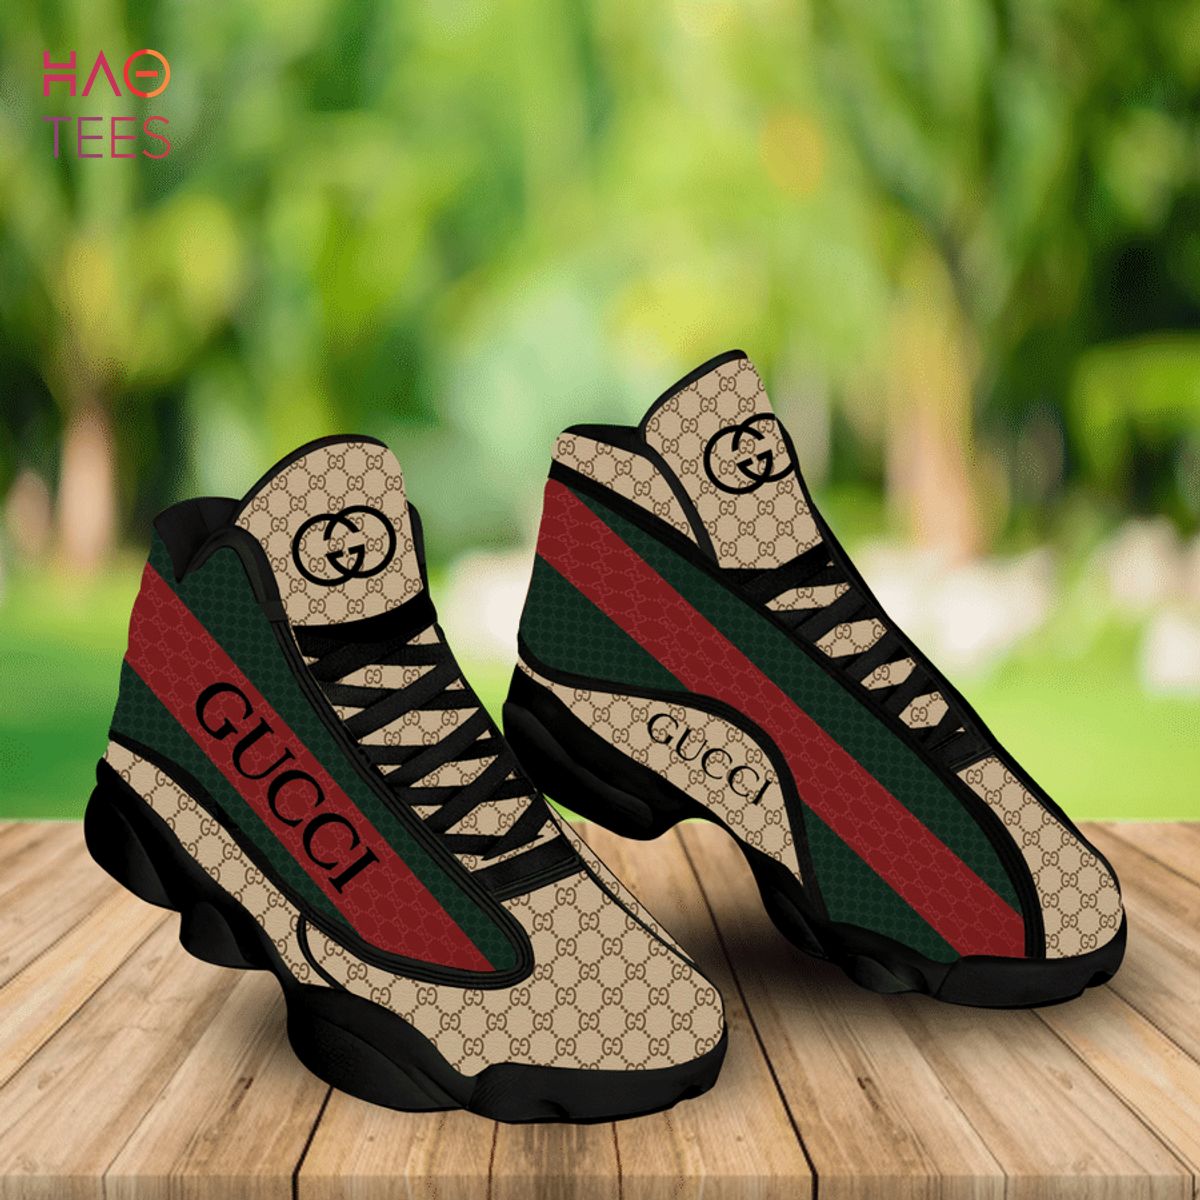 silke kvarter Streng Gucci Retro Air Jordan 13 Sneakers Shoes Hot 2022 Gucci Gifts For Men Women